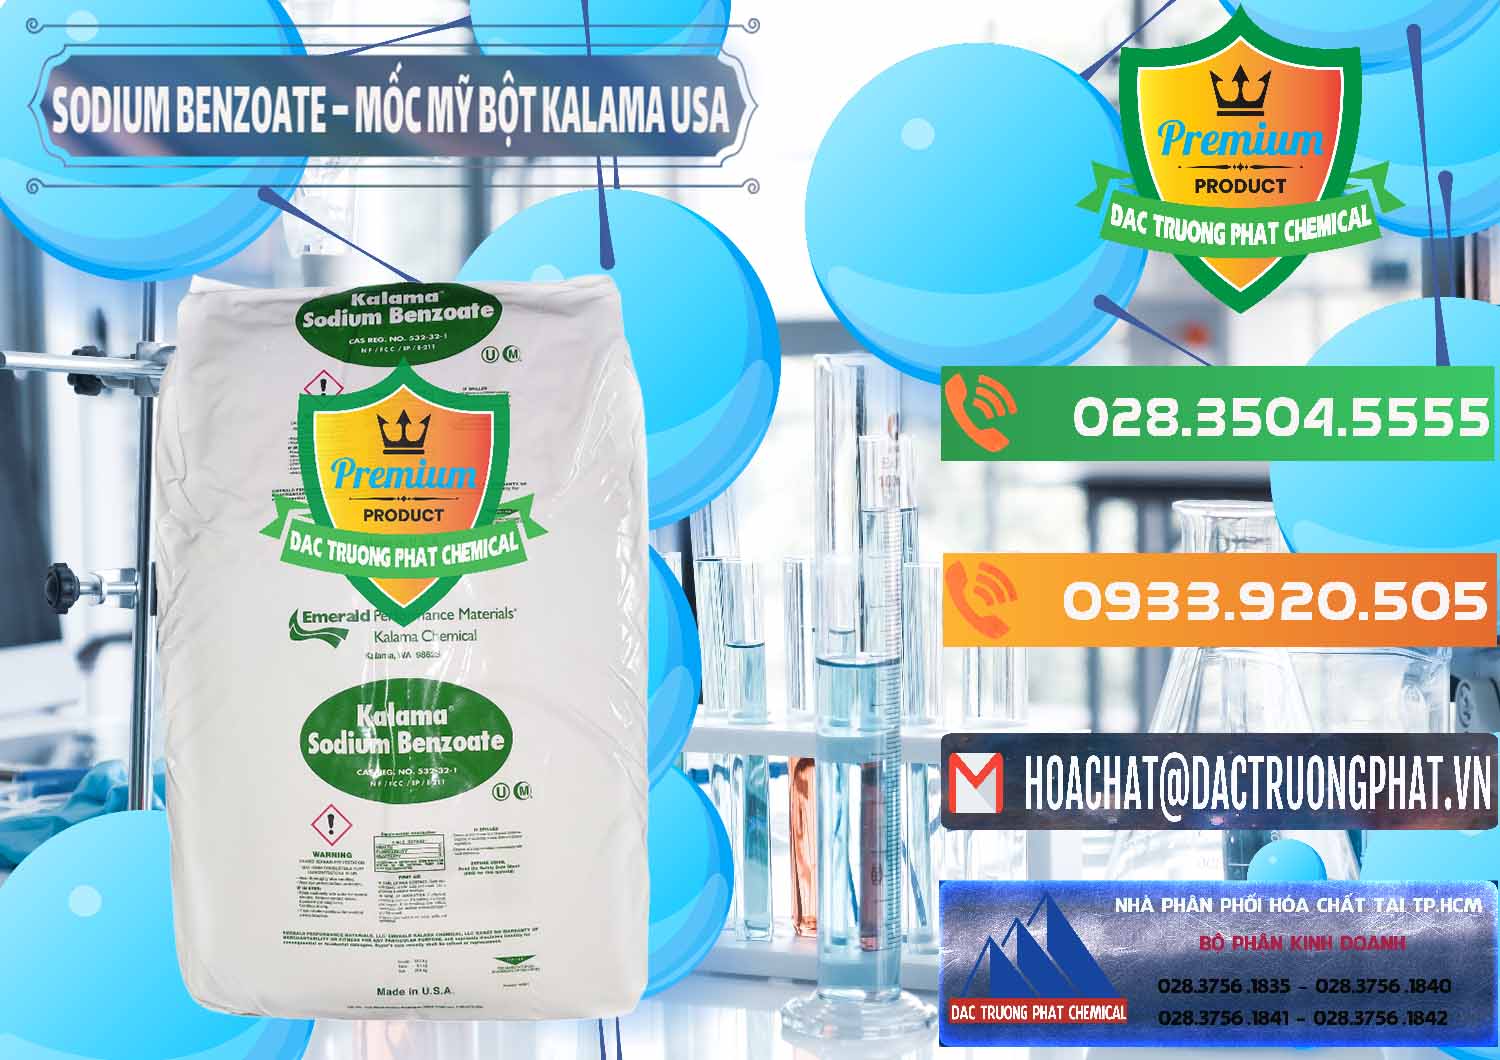 Chuyên bán và cung ứng Sodium Benzoate - Mốc Bột Kalama Food Grade Mỹ Usa - 0136 - Nơi chuyên bán và phân phối hóa chất tại TP.HCM - hoachatxulynuoc.com.vn